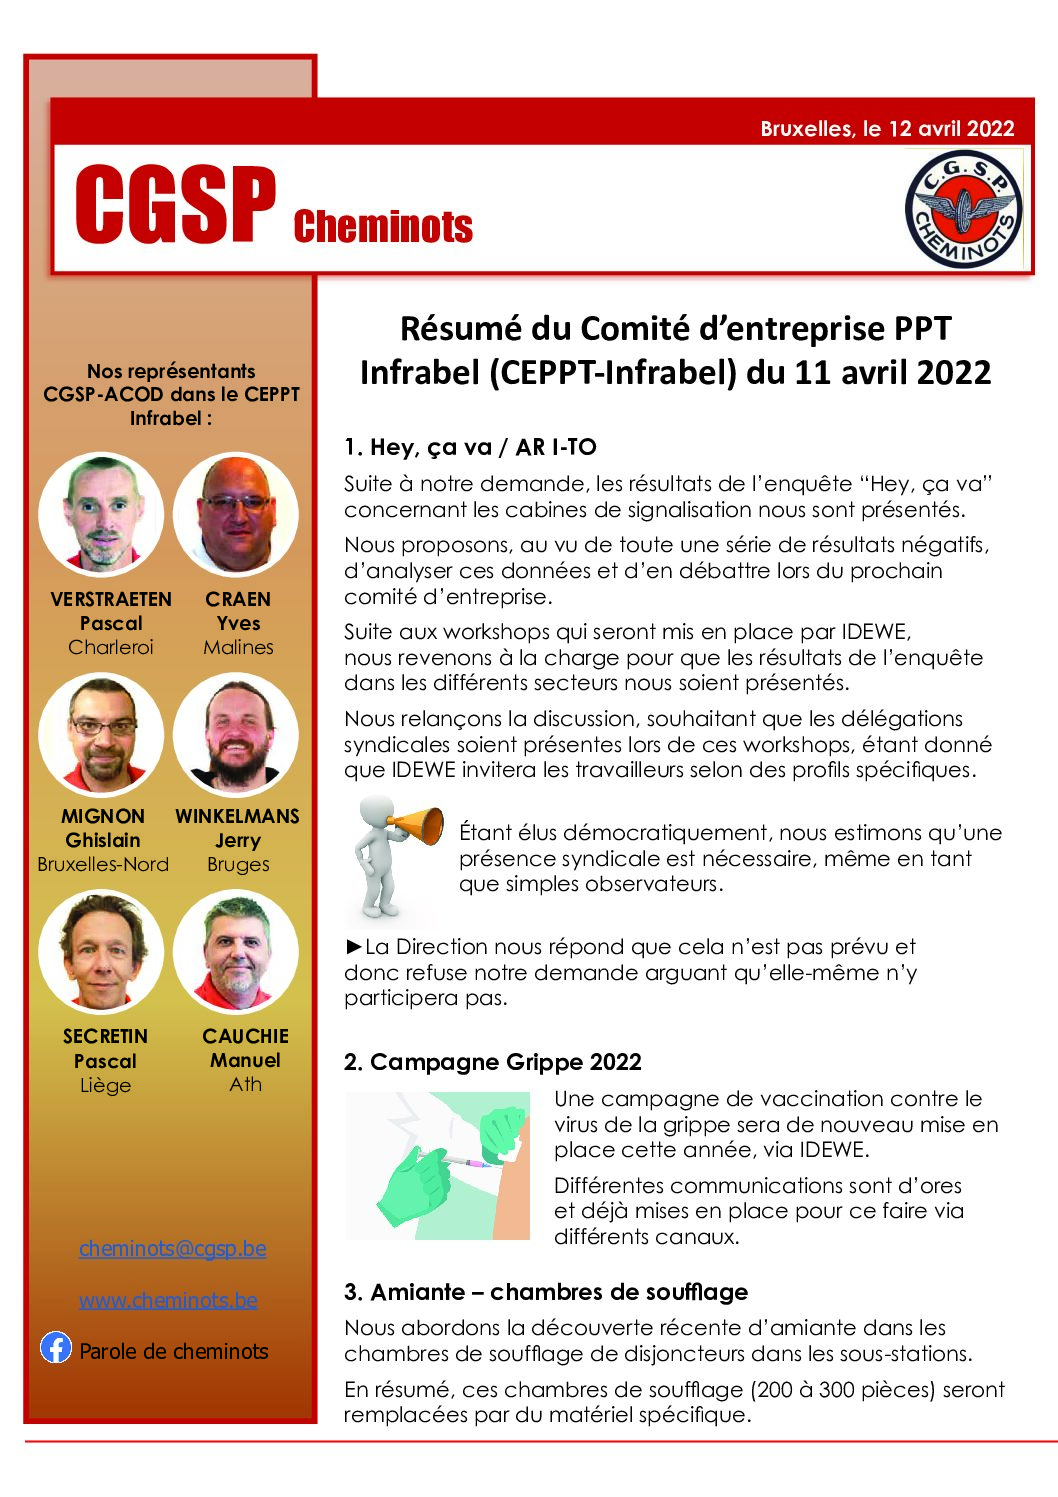 Résumé du Comité d’entreprise PPT Infrabel (CEPPT-Infrabel) du 11 avril 2022